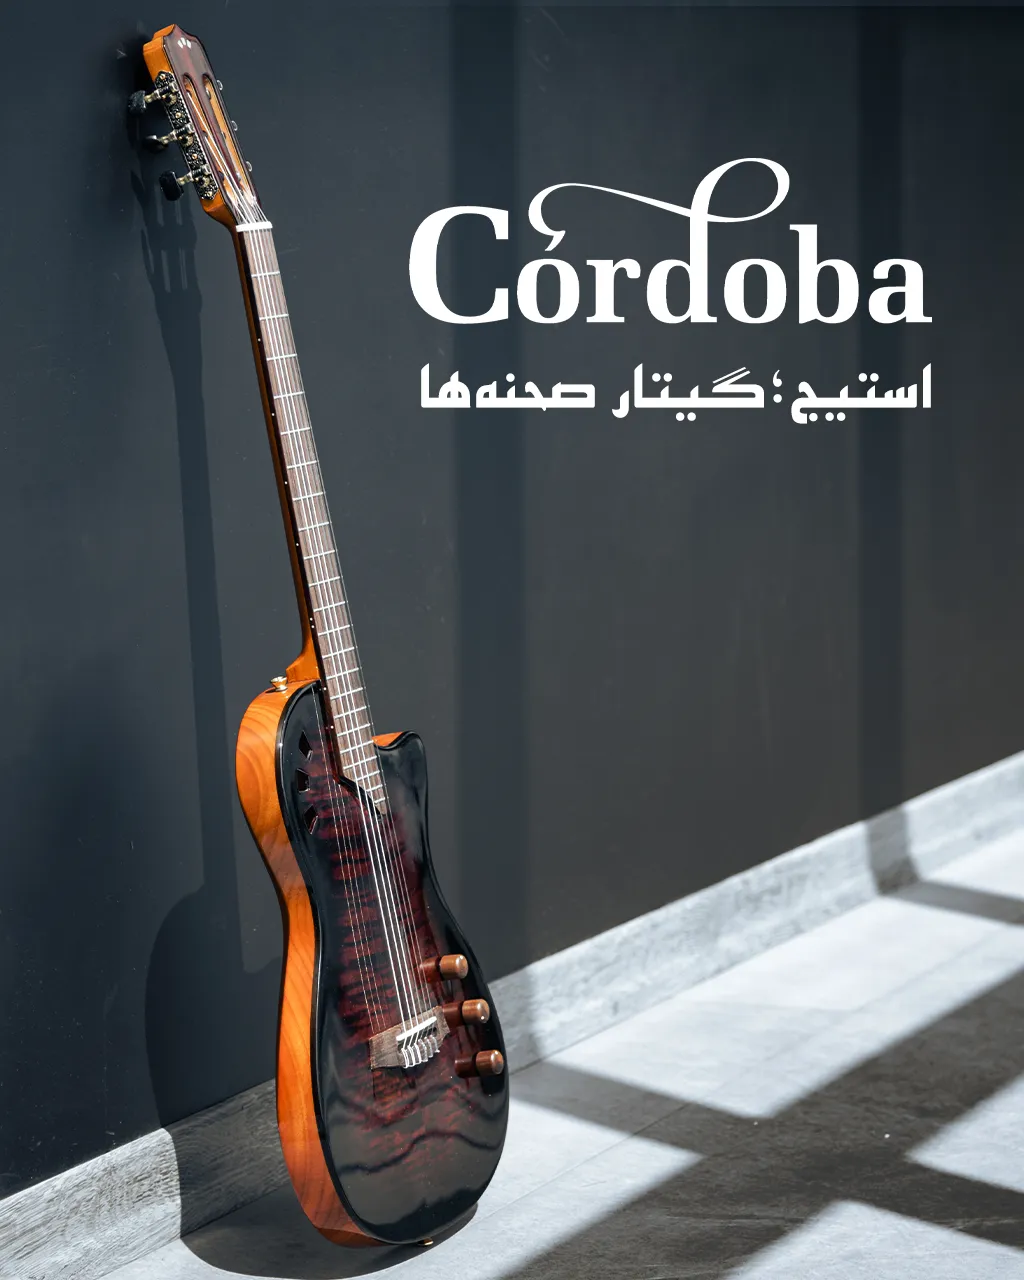 02 Cordoba Stage - Mobile